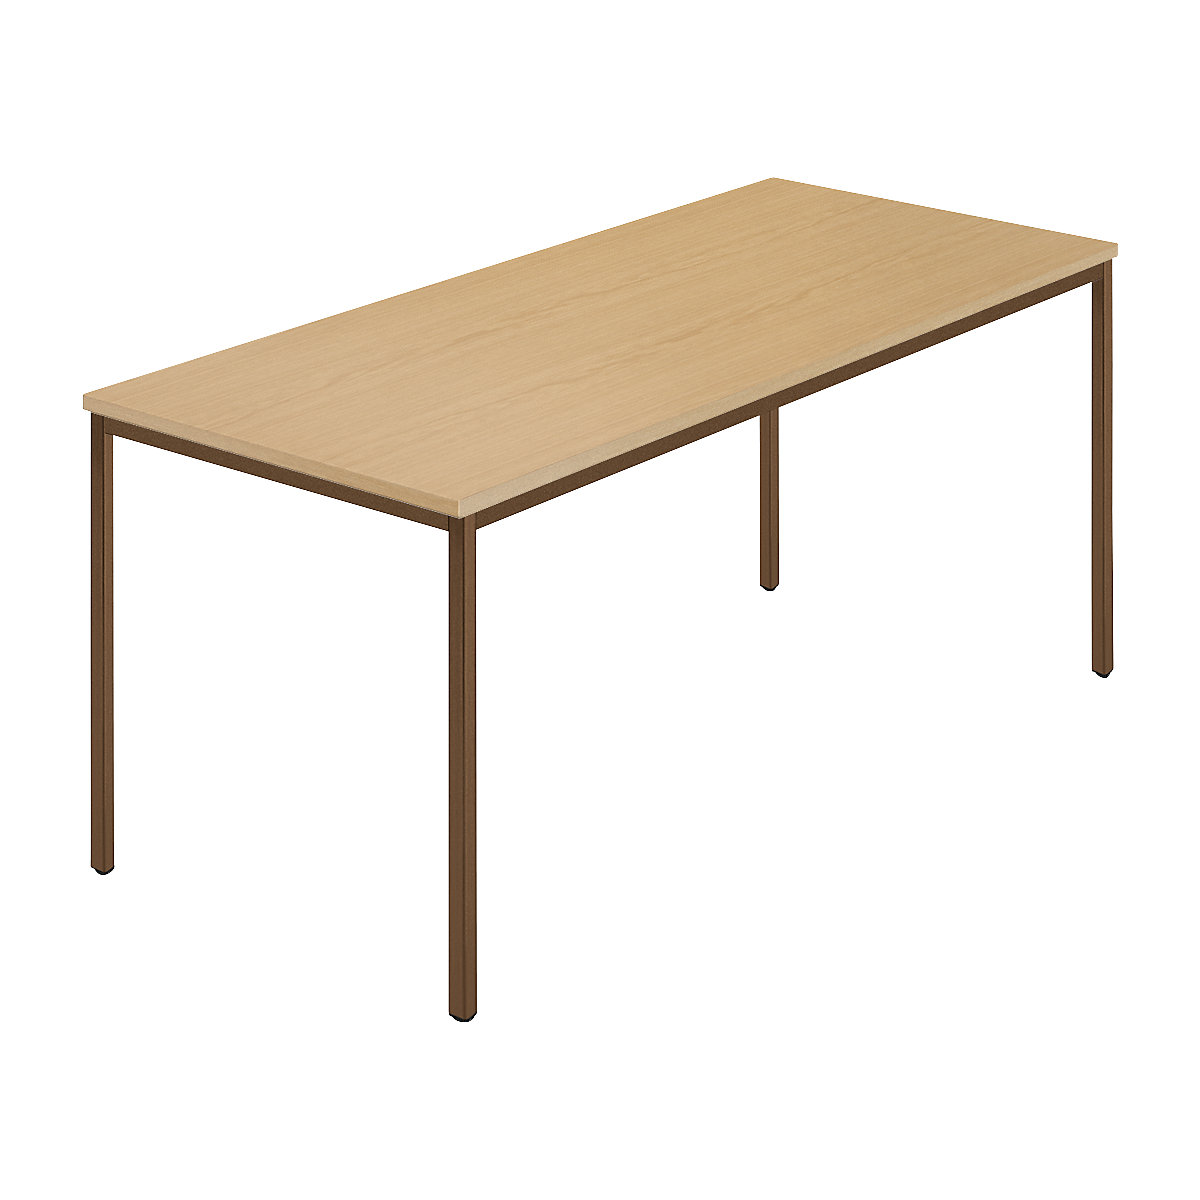 Table rectangulaire, tube carré plastifié, l x p 1600 x 800 mm, hêtre naturel / brun-5